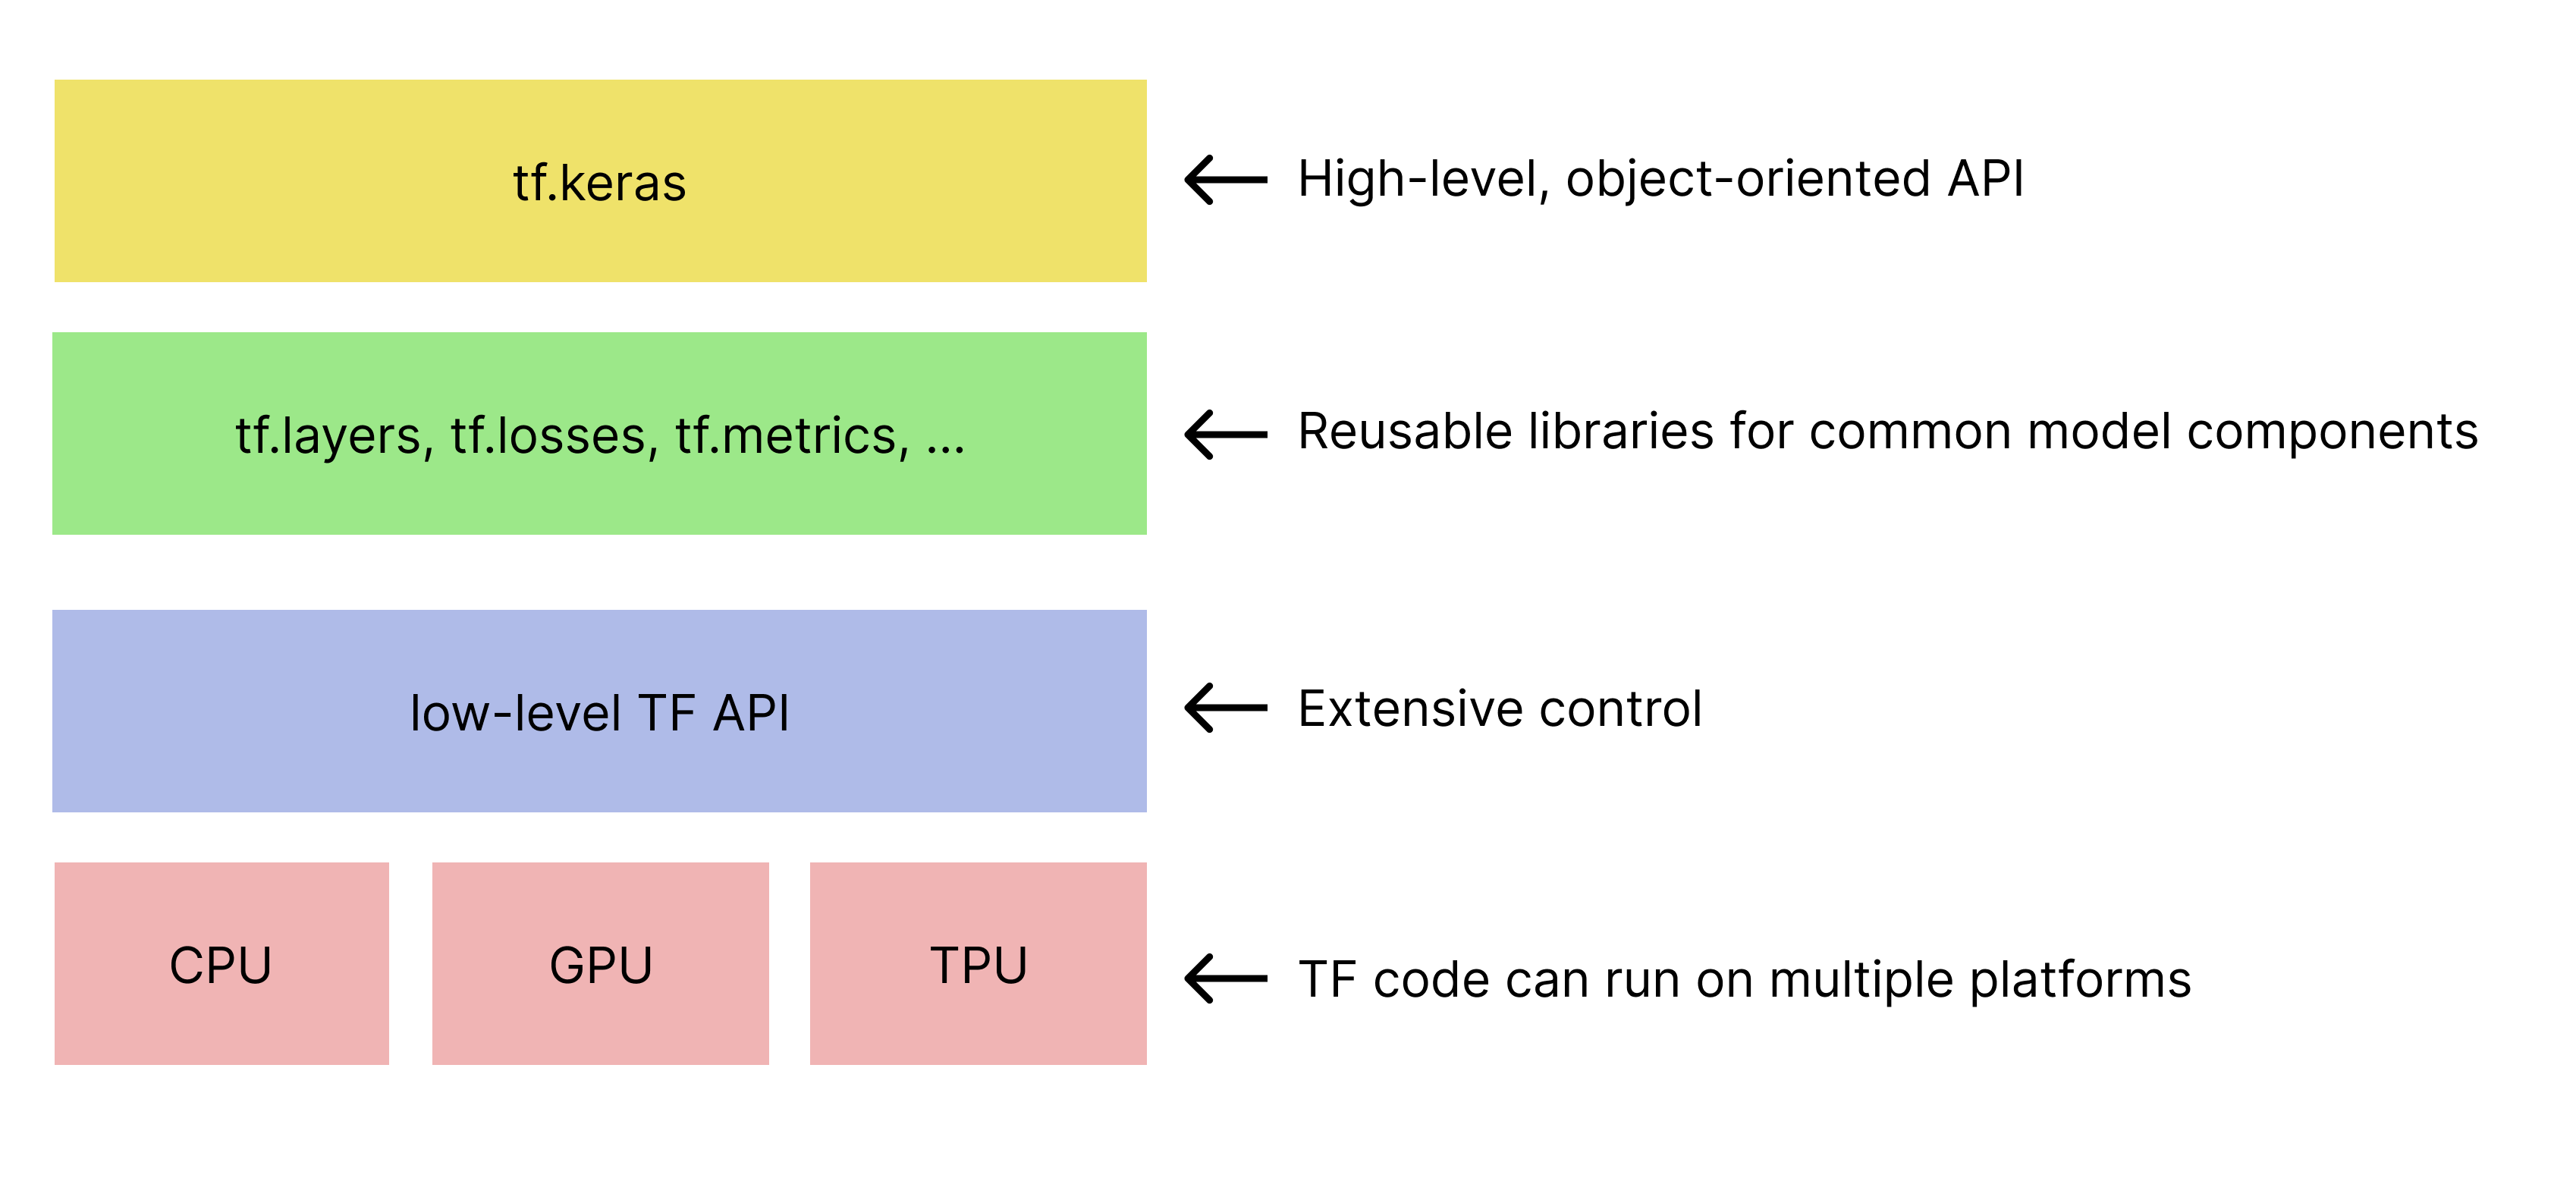 简化了 TensorFlow 工具包的层次结构。
   tf.keras API 位于顶部。